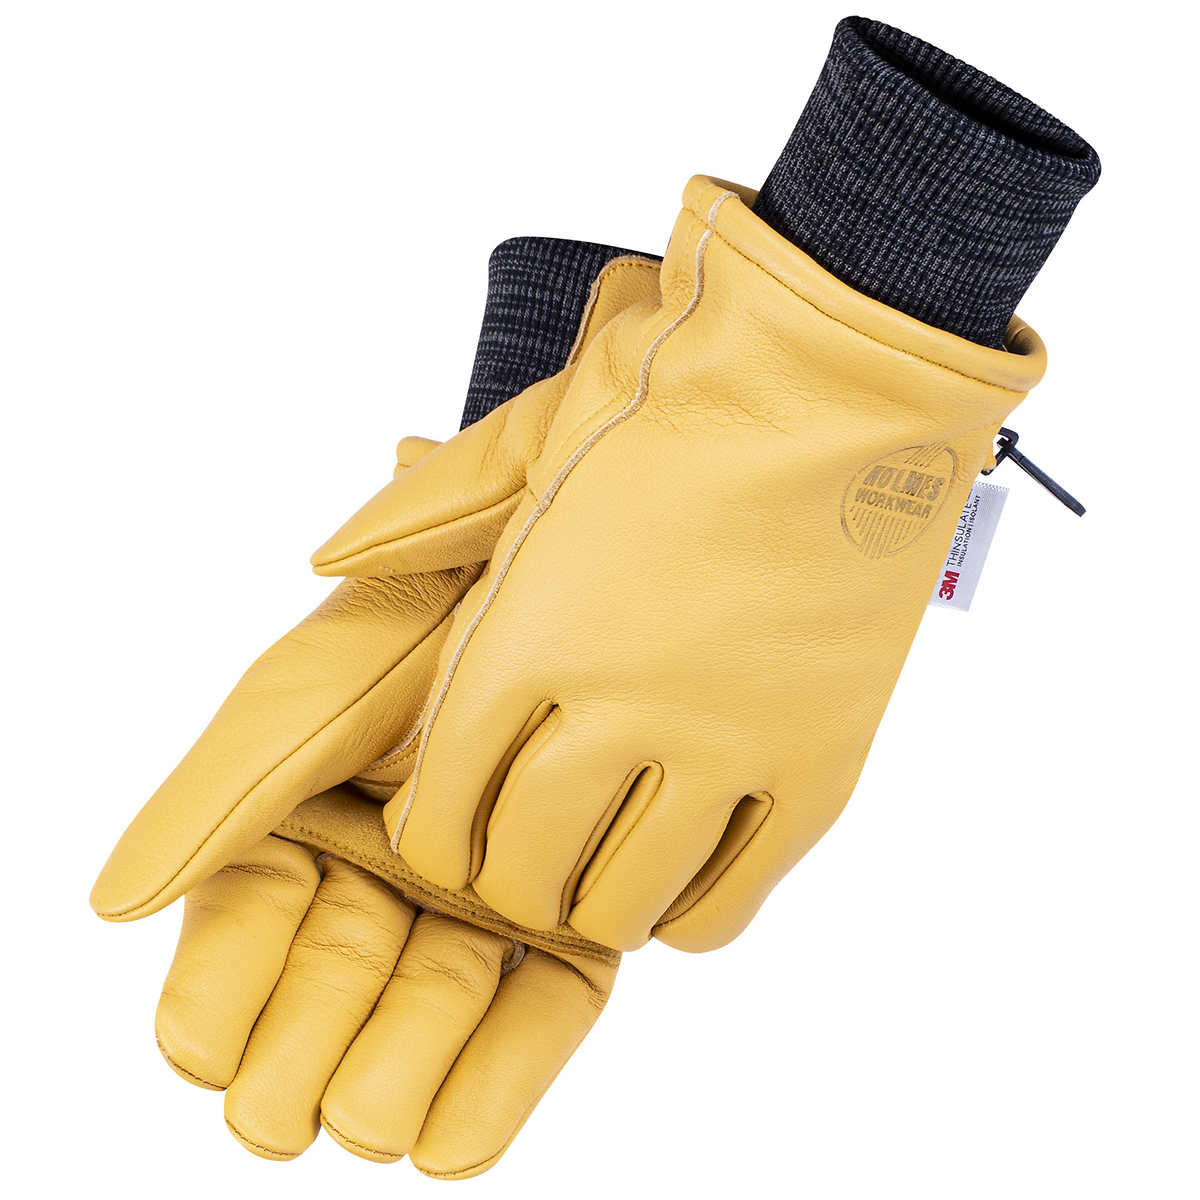  Pairs of deerskin gloves